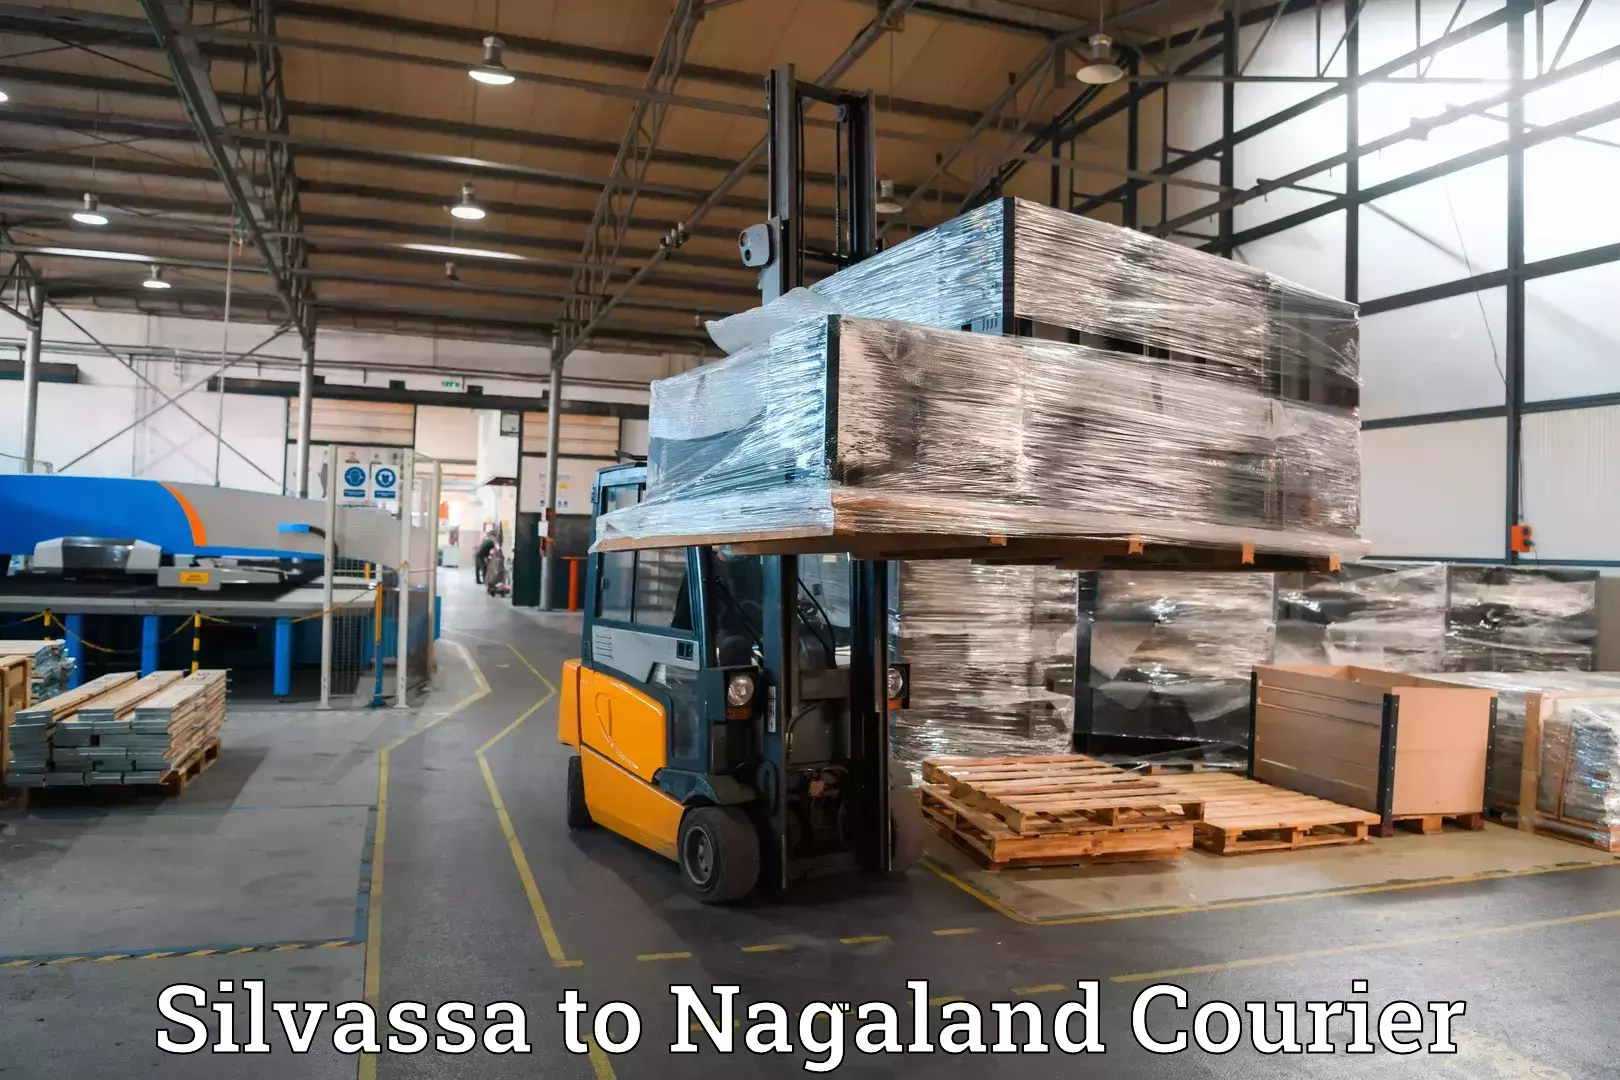 Luggage delivery network Silvassa to Dimapur